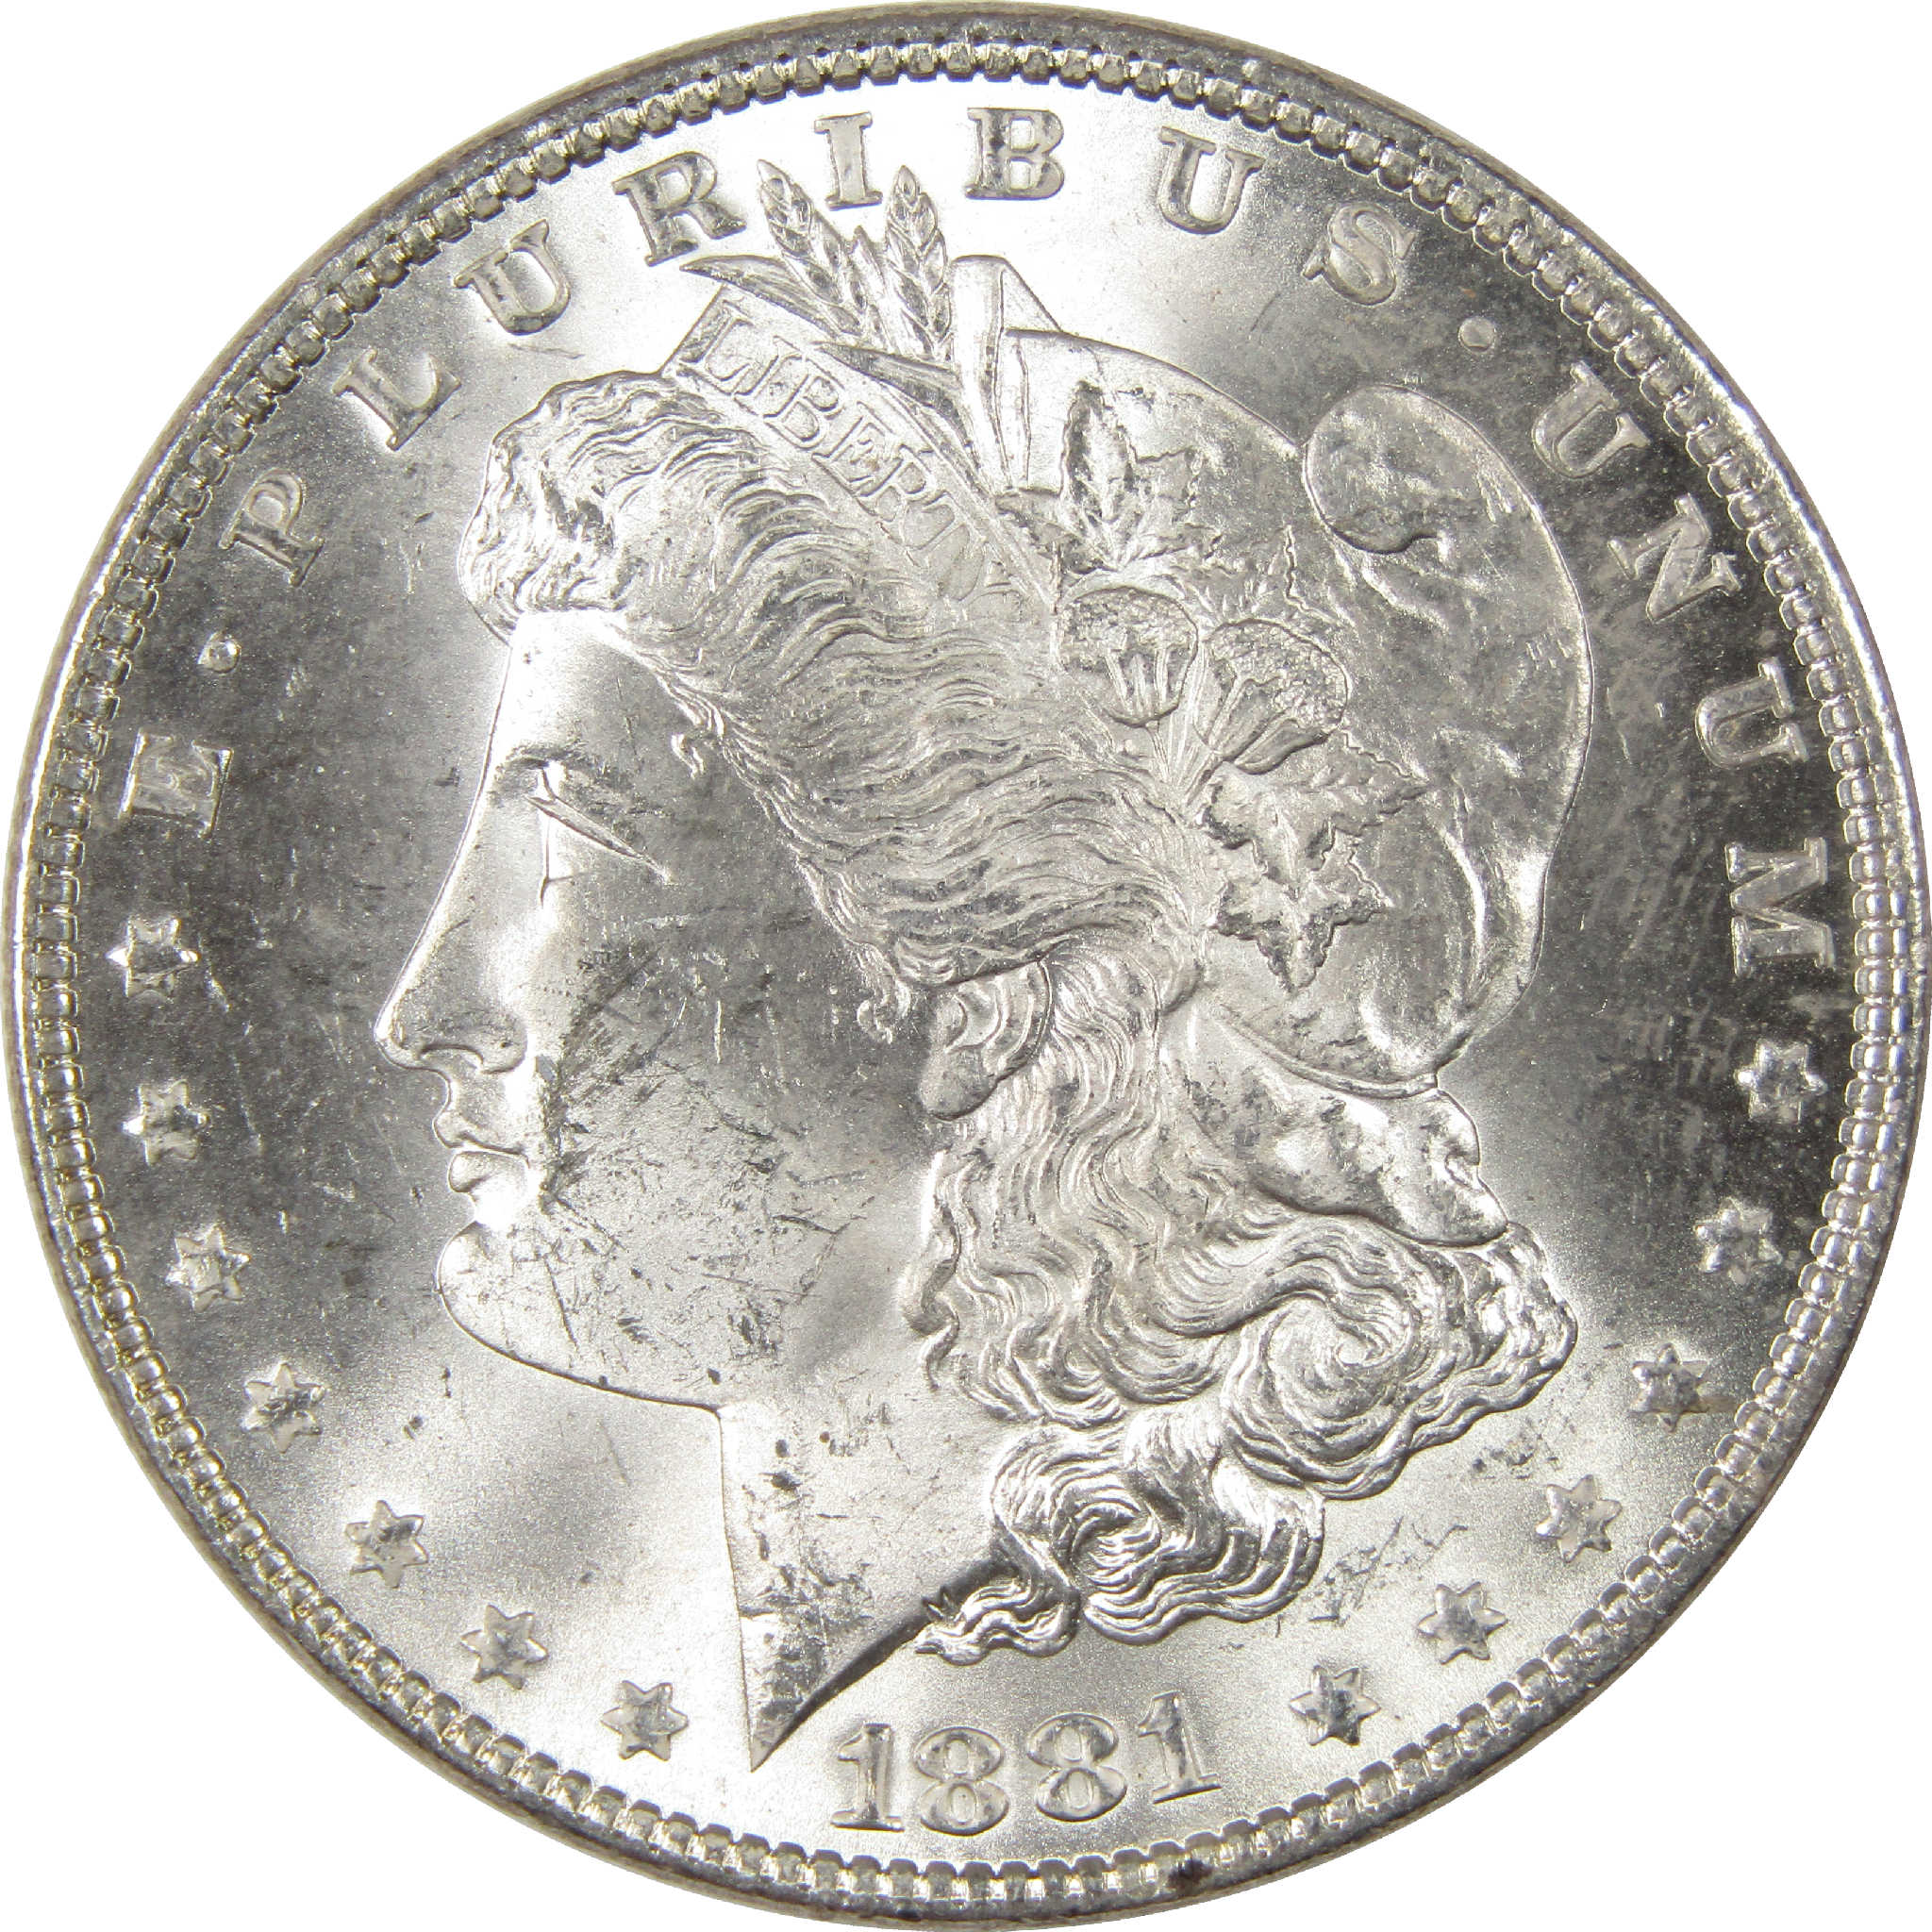 1881 Morgan Dollar Uncirculated Silver $1 Coin - Morgan coin - Morgan silver dollar - Morgan silver dollar for sale - Profile Coins &amp; Collectibles